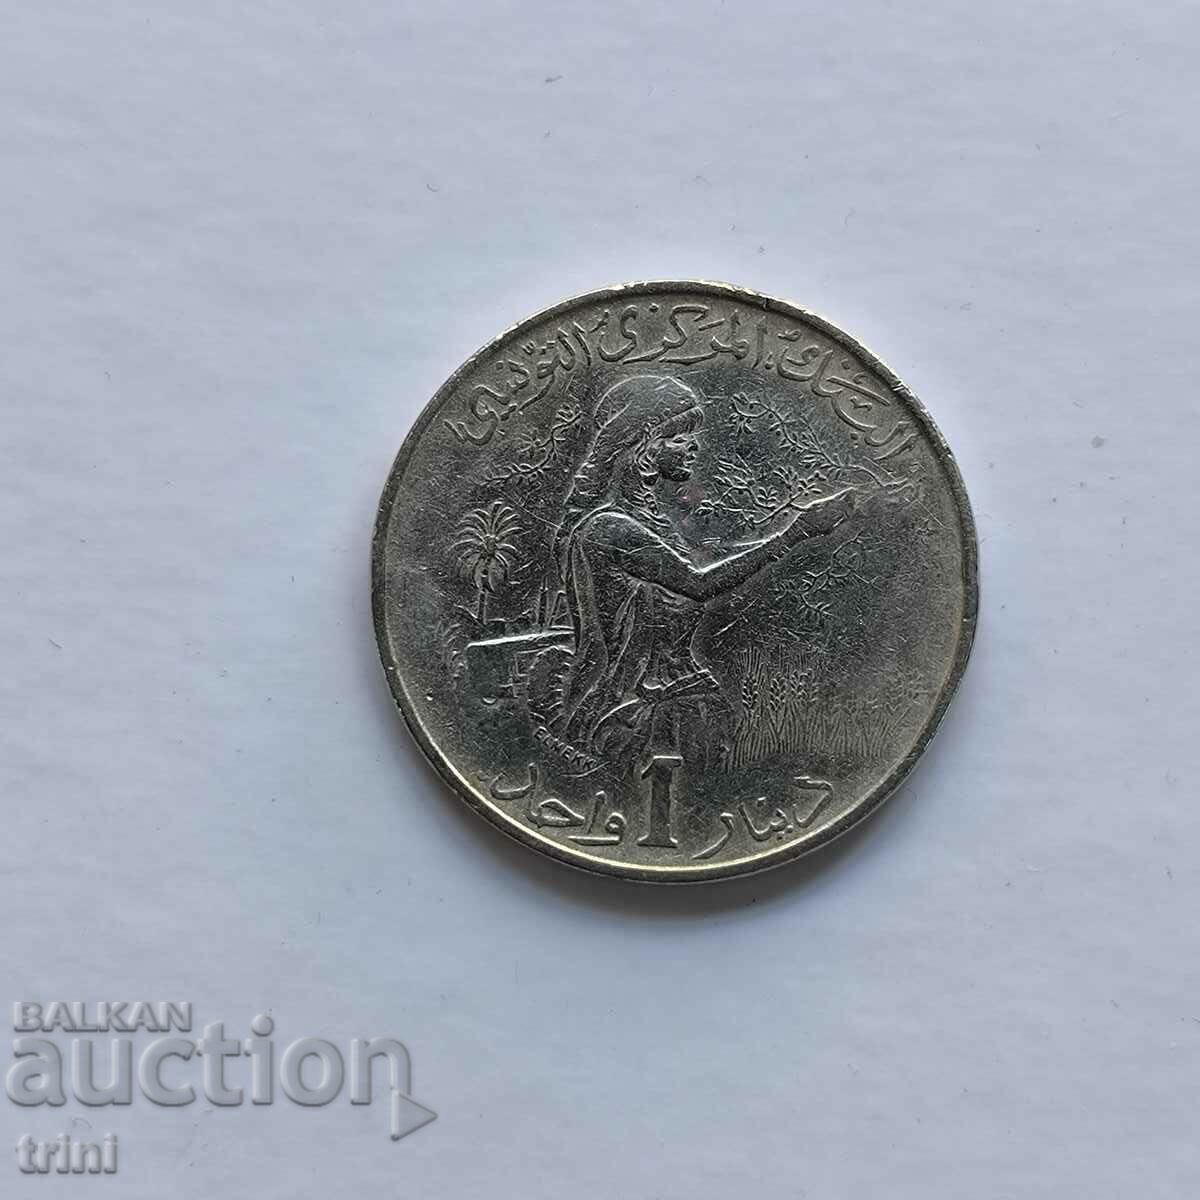 Tunisia 1 dinar 1976 FAO